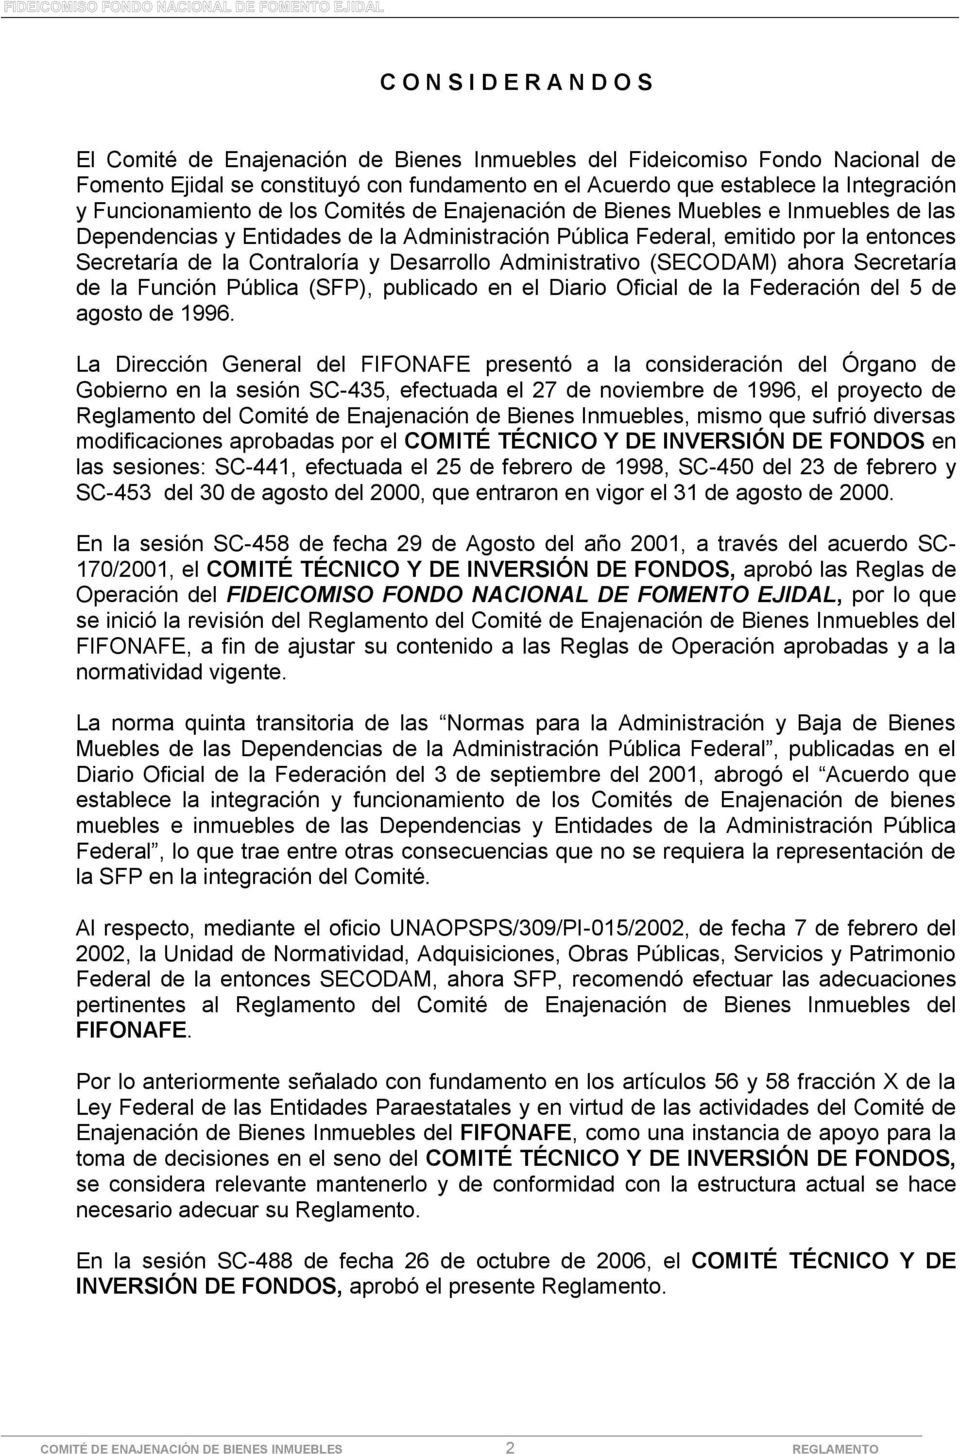 Desarrollo Administrativo (SECODAM) ahora Secretaría de la Función Pública (SFP), publicado en el Diario Oficial de la Federación del 5 de agosto de 1996.